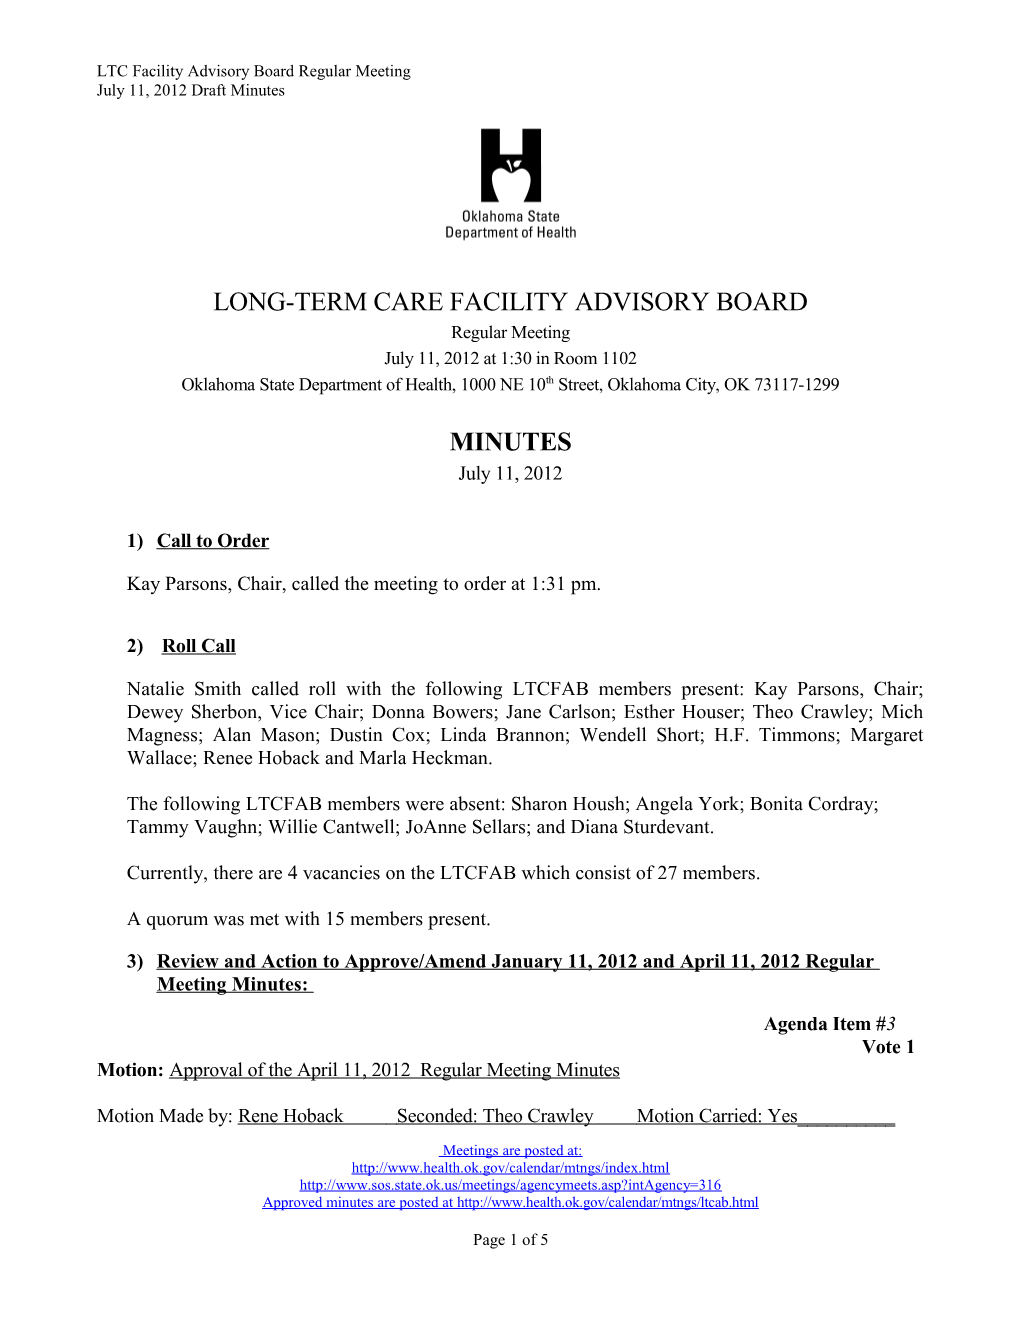 LTC Facility Advisory Board Minutes